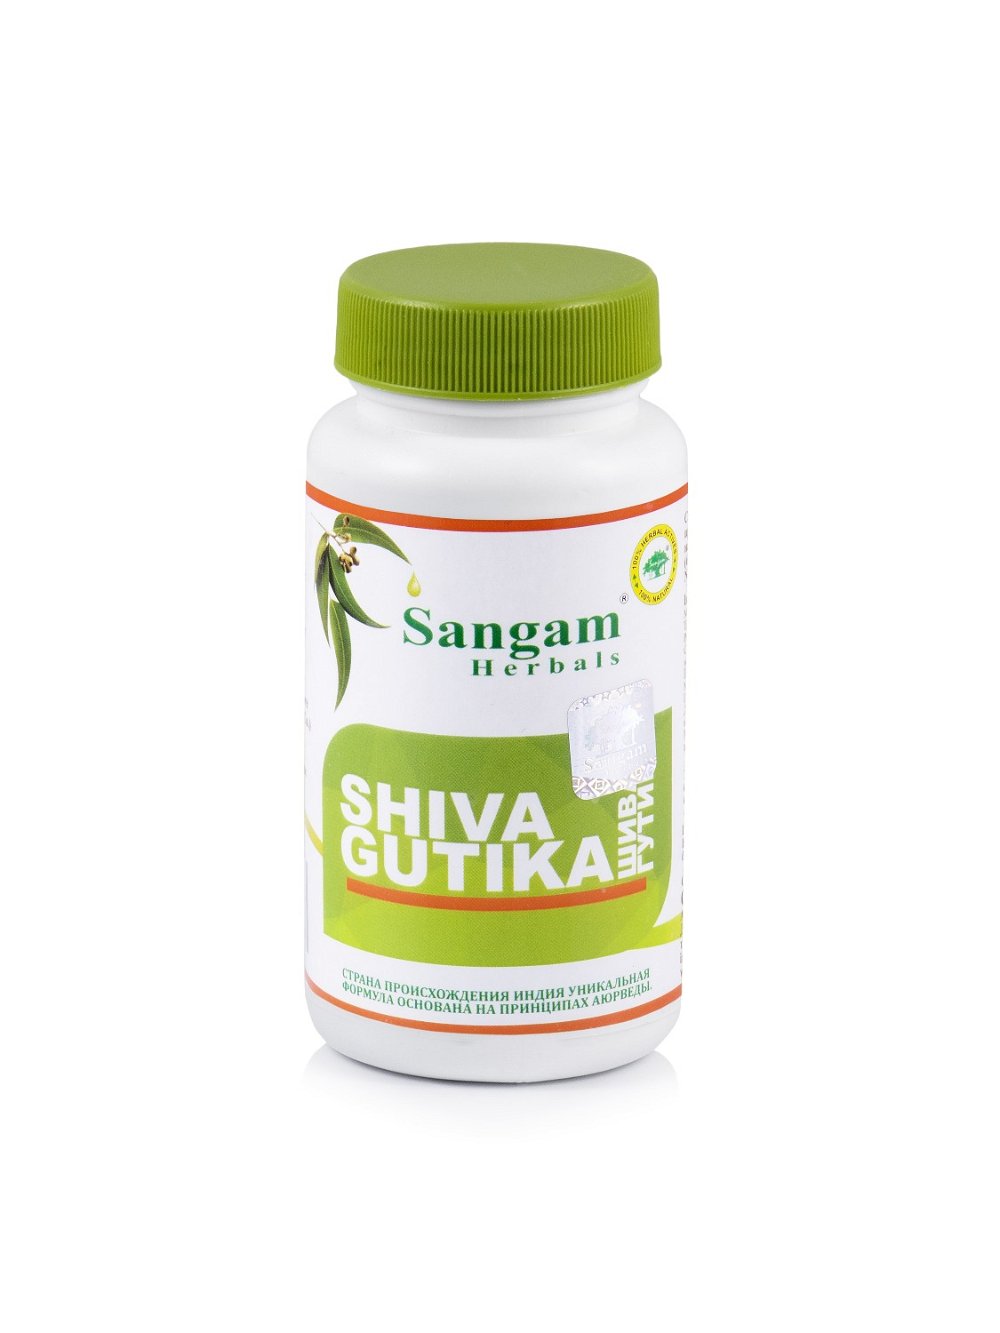 Шива Гутика Sangam Herbals (60 таблеток), 